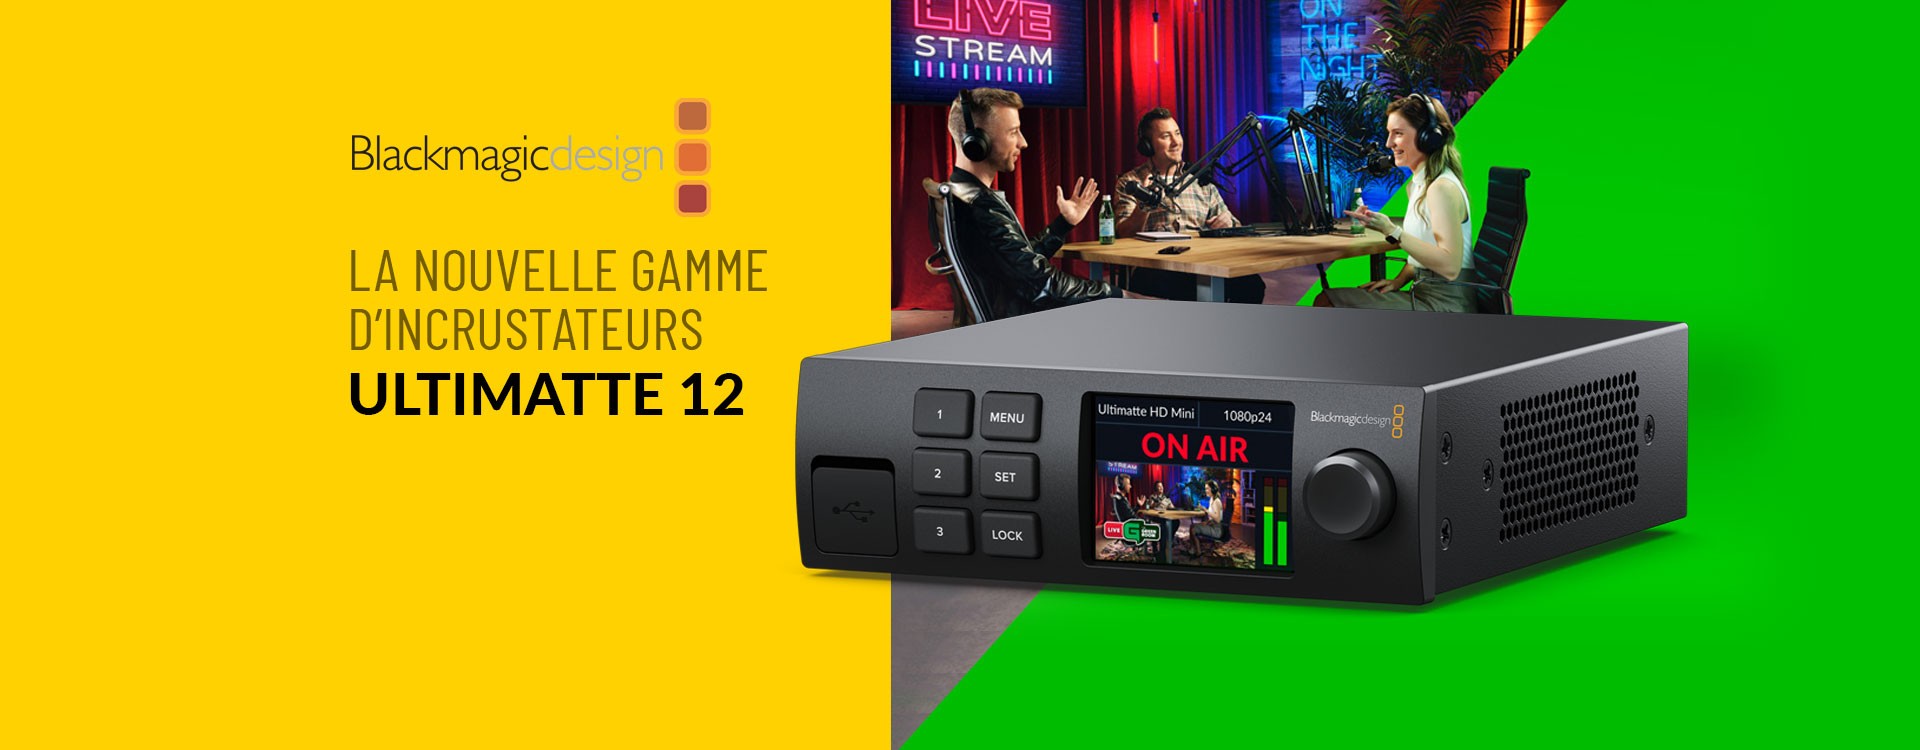 Blackmagic Design annonce la sortie de nouveaux modèles Ultimatte 12